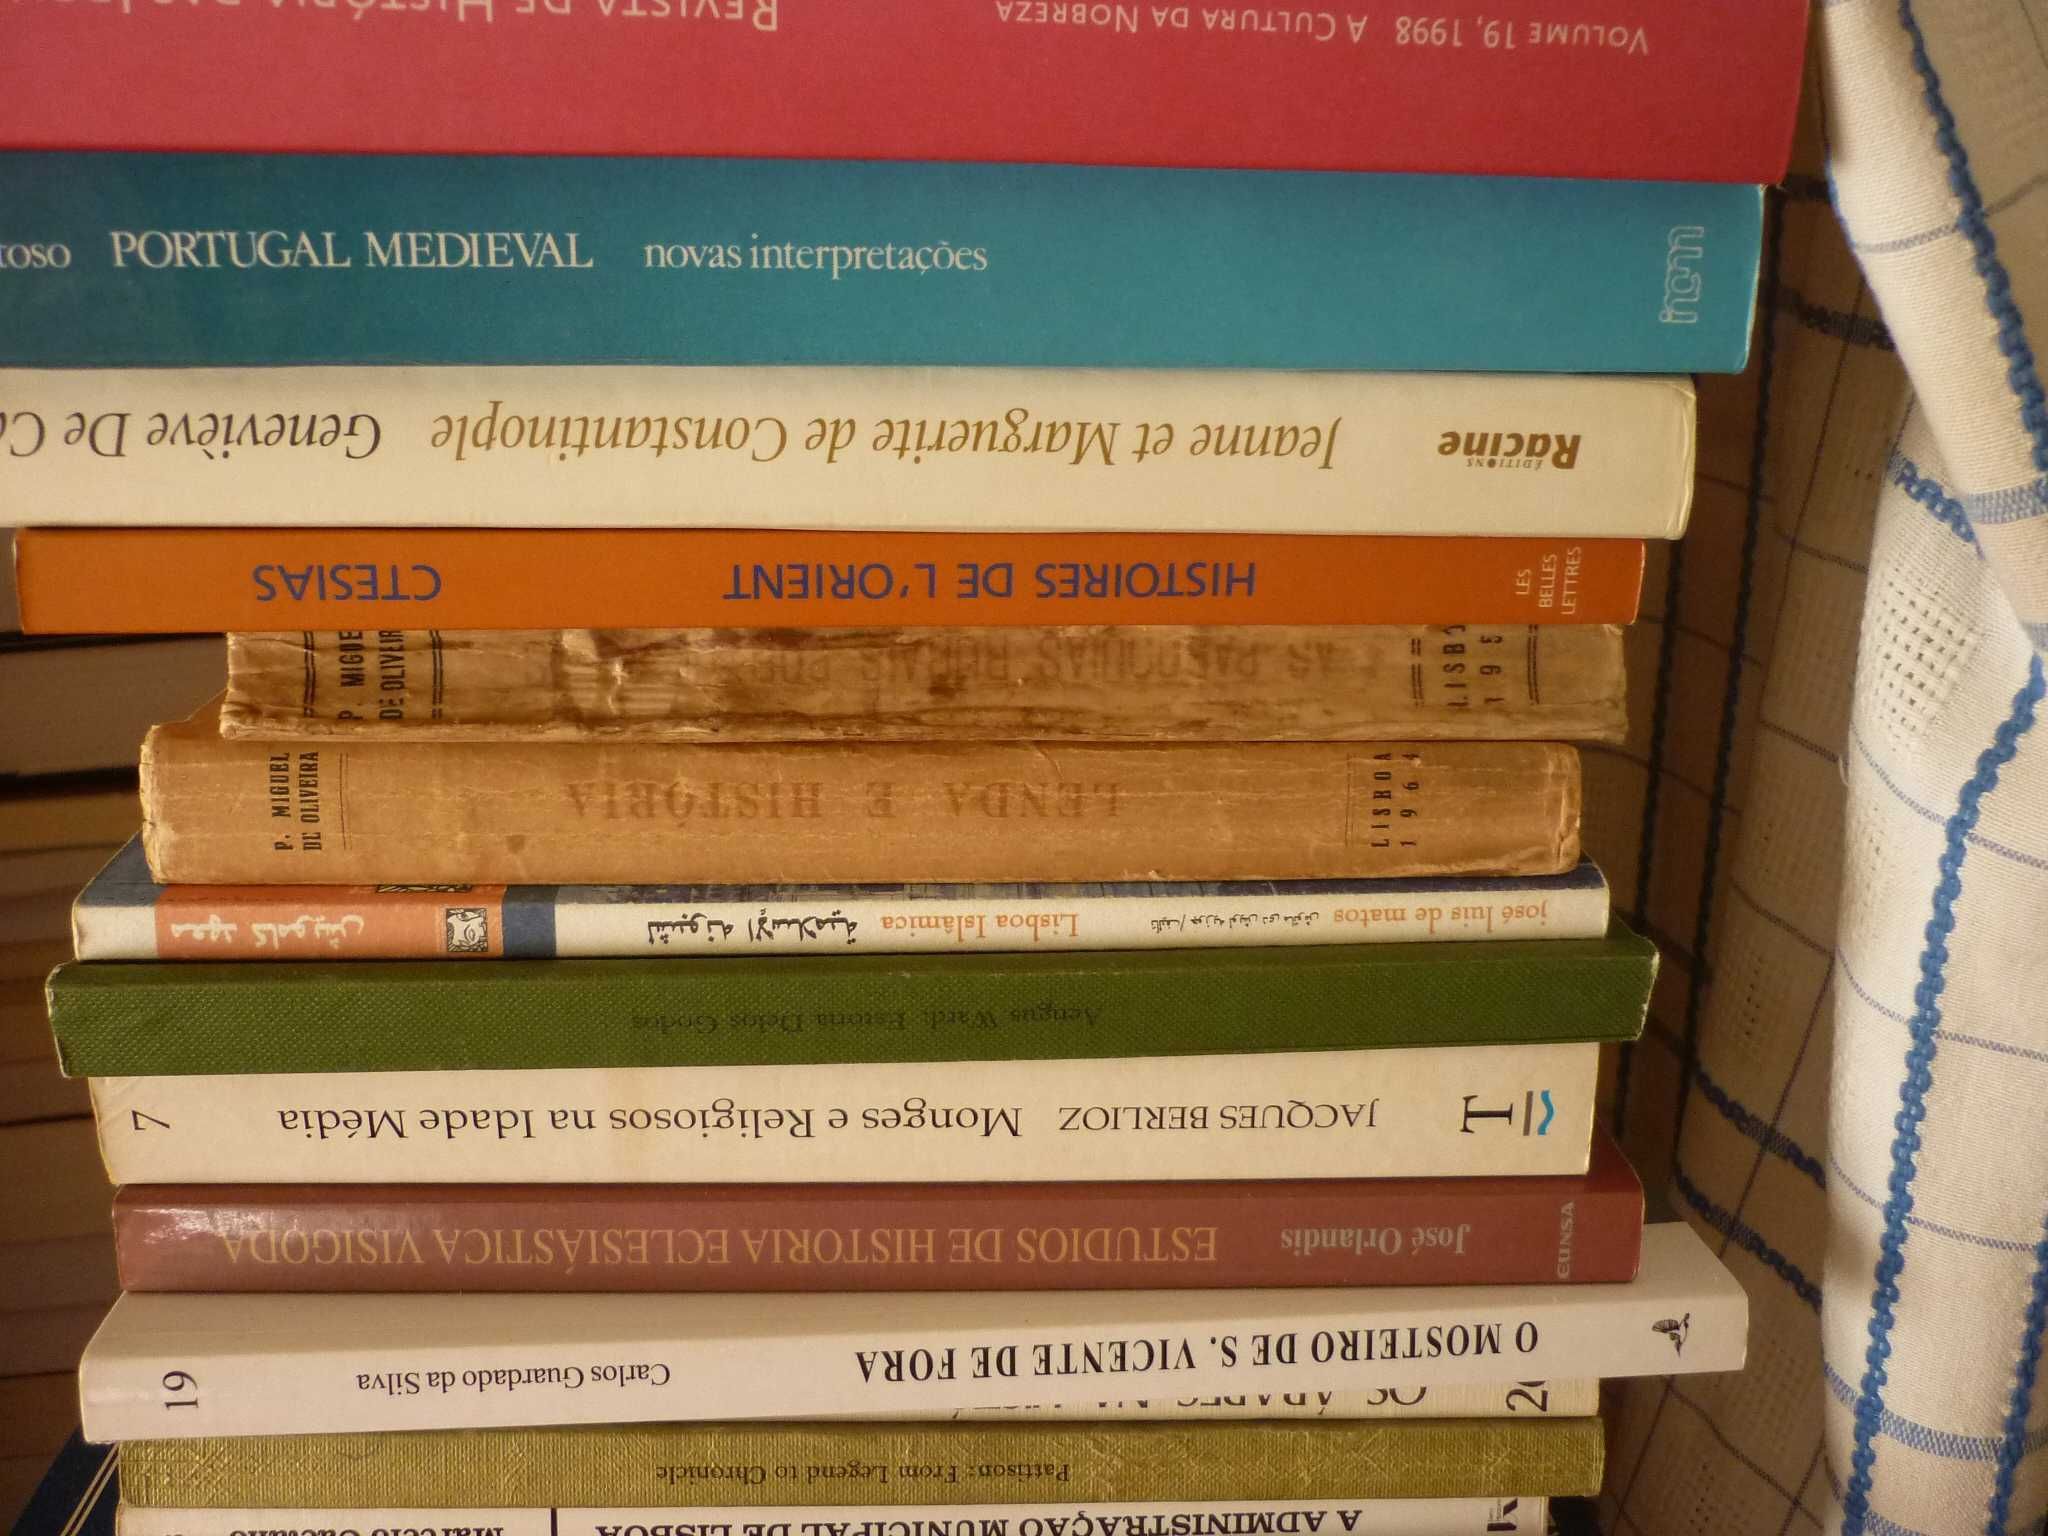 Mário Martins, Peregrinações e livros de milagres na nossa Idade Média